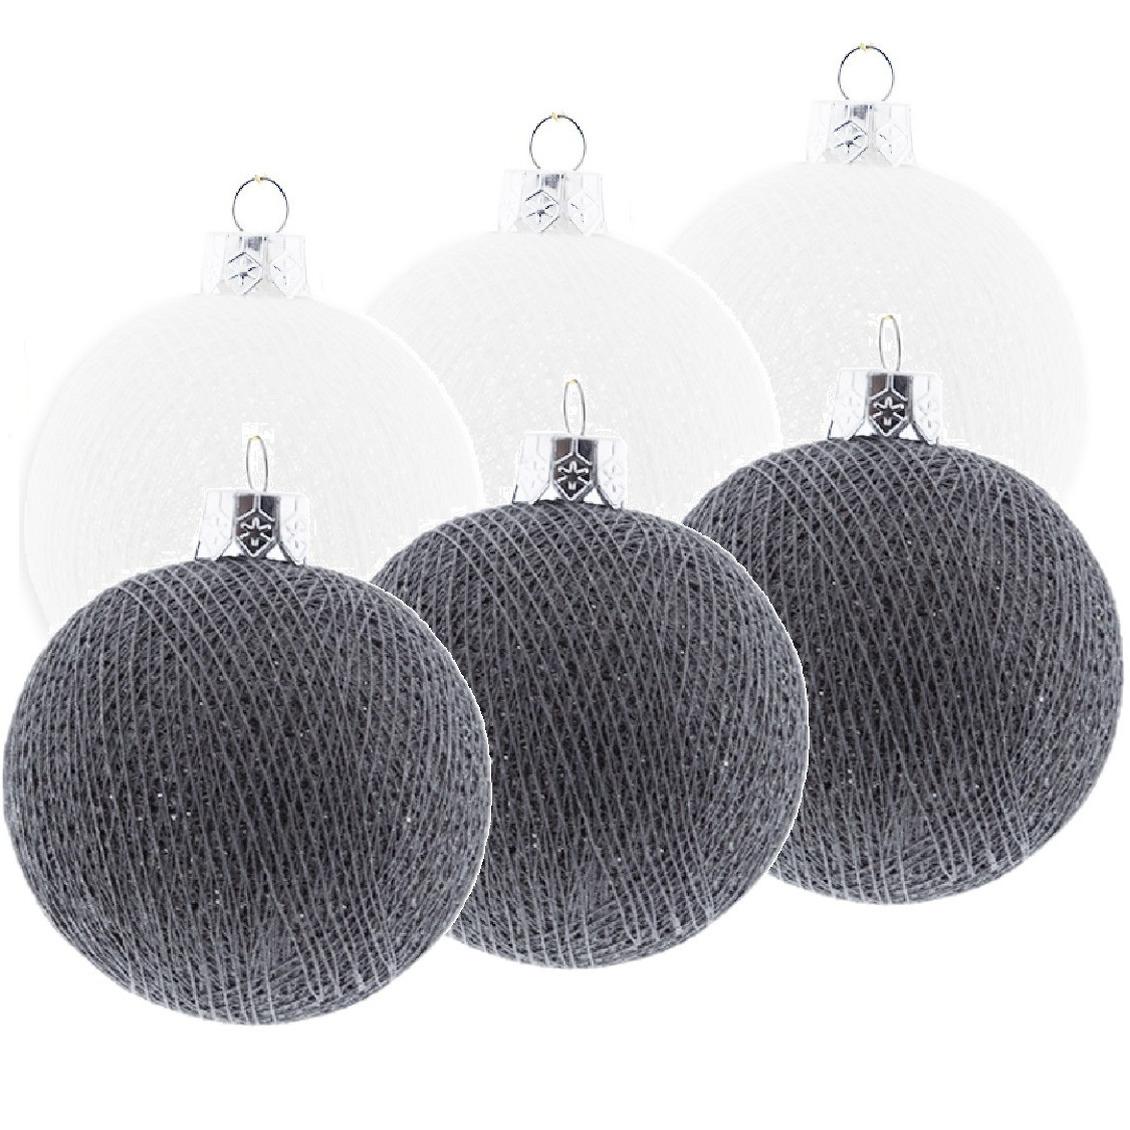 6x Wit-grijze Cotton Balls kerstballen decoratie 6,5 cm